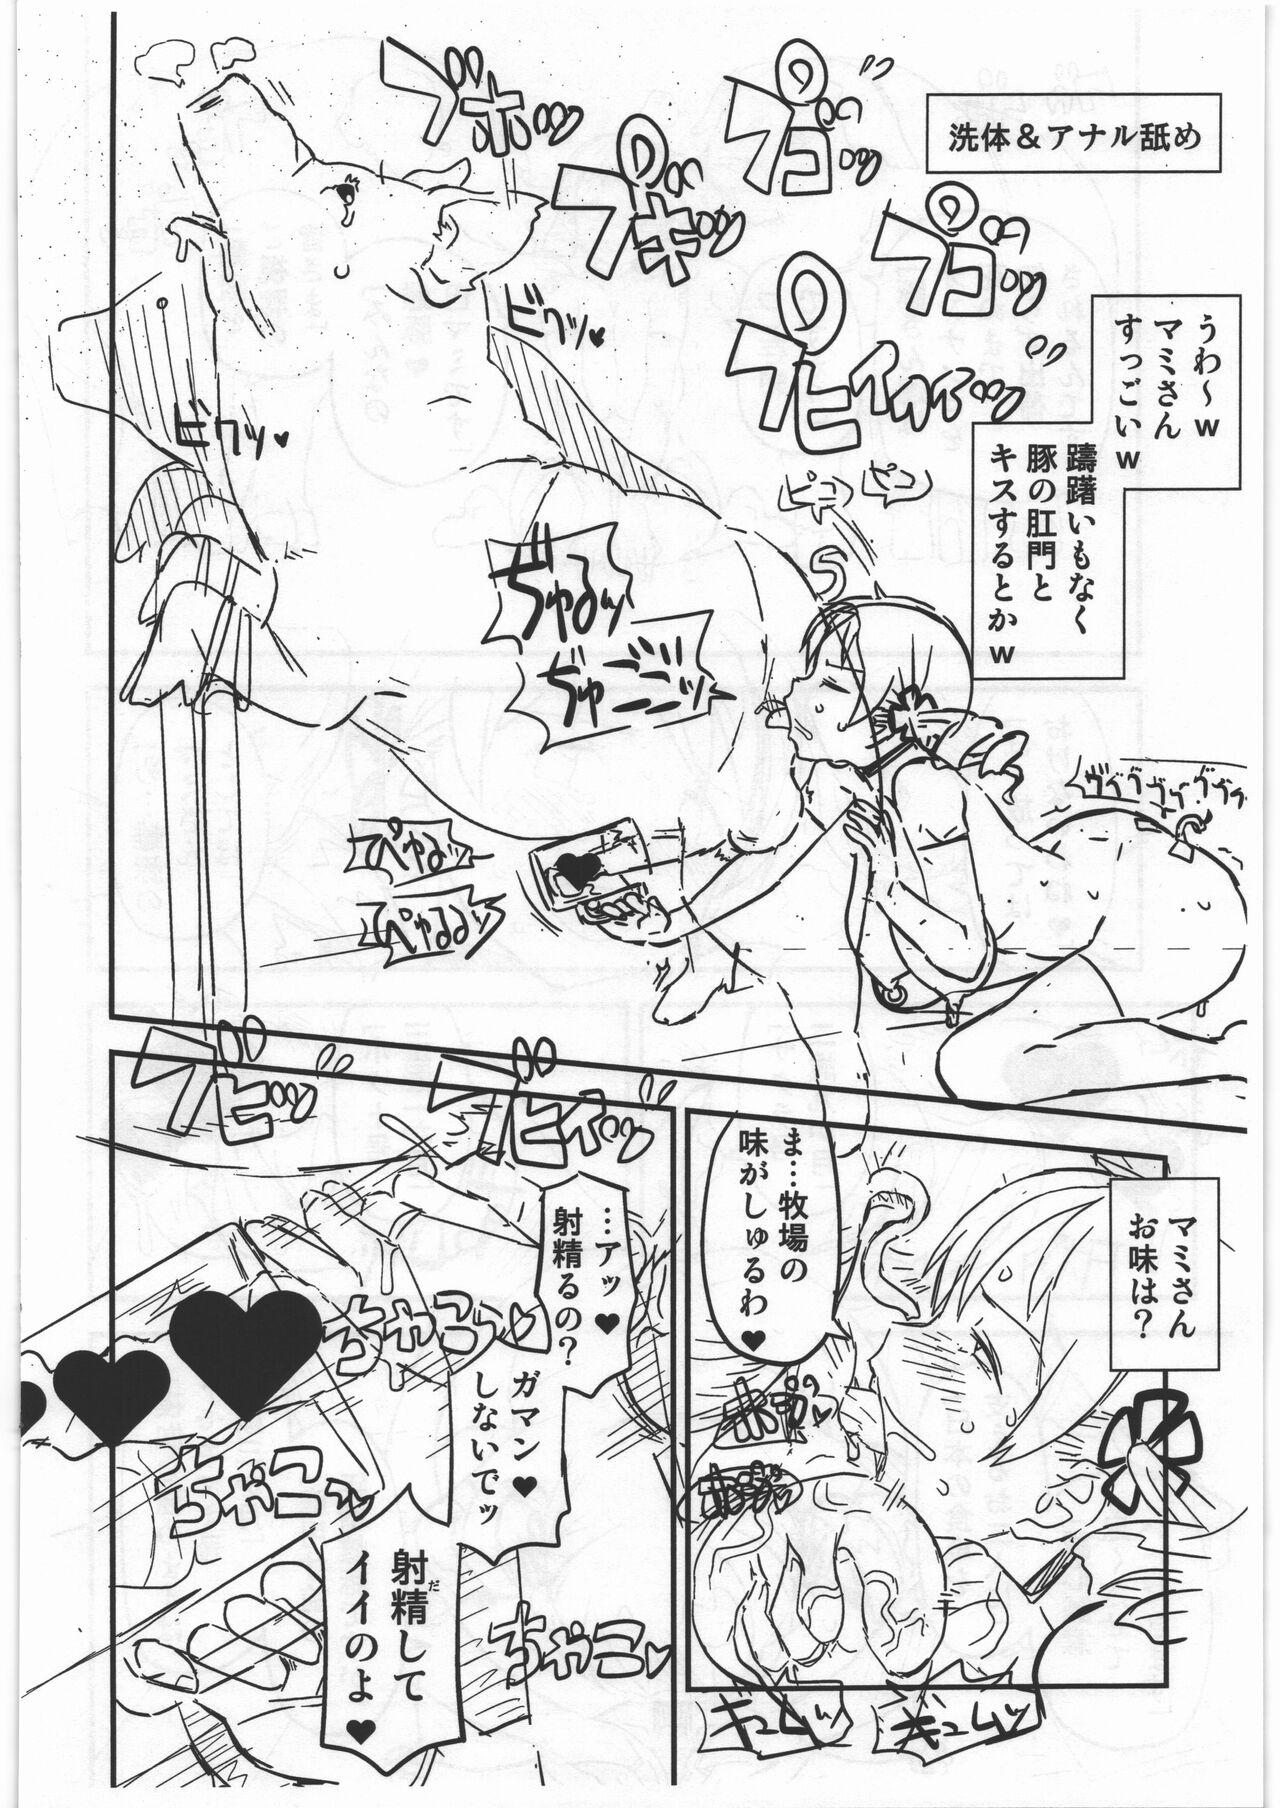 Masturbando CB:NG M★M - Puella magi madoka magica Monster hunter Exhibition - Page 14